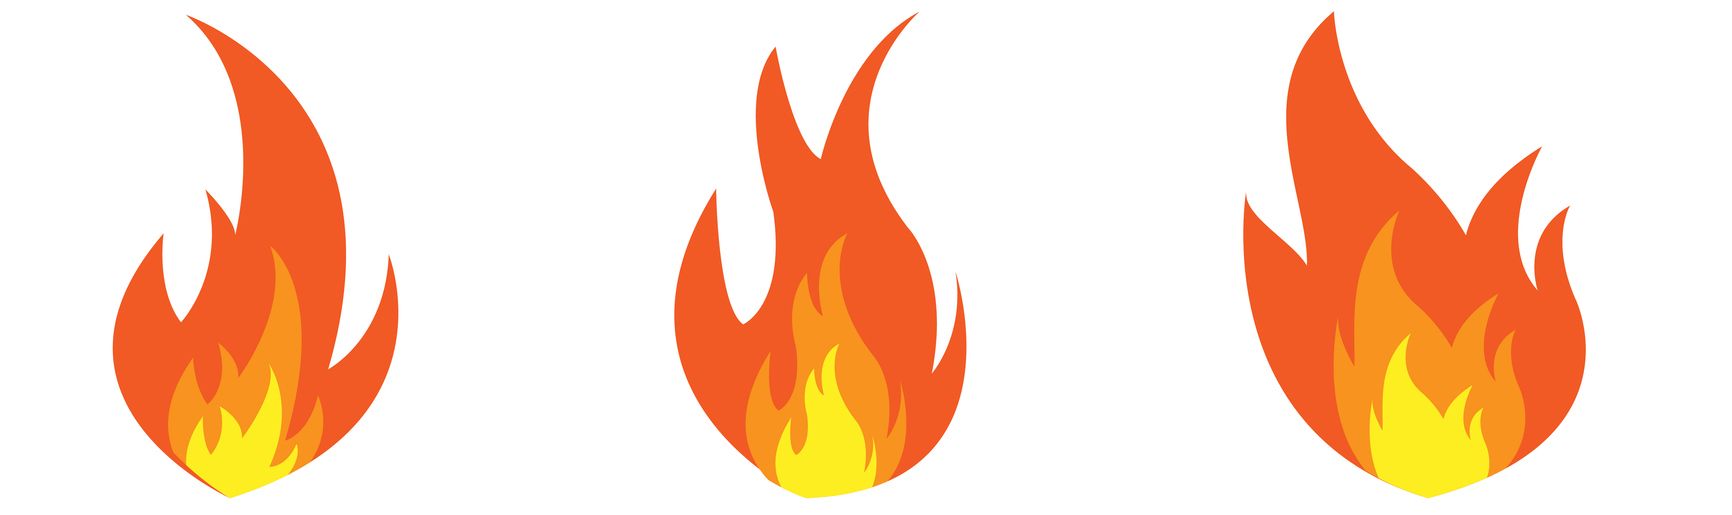 gay flag on fire emoji